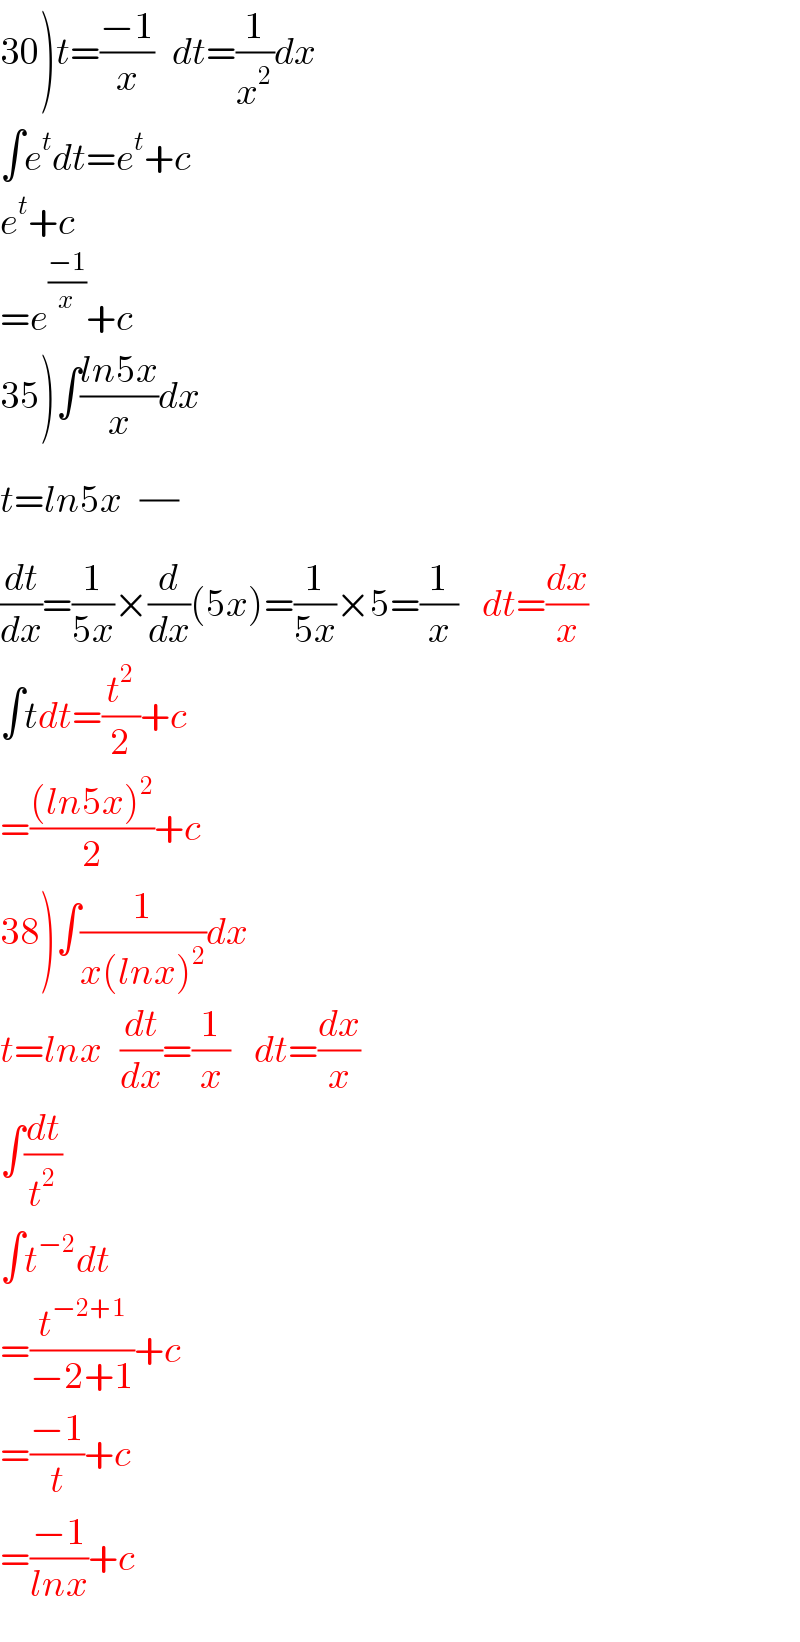 30)t=((−1)/x)   dt=(1/x^2 )dx  ∫e^t dt=e^t +c  e^t +c  =e^((−1)/x) +c  35)∫((ln5x)/x)dx  t=ln5x   (/)  (dt/dx)=(1/(5x))×(d/dx)(5x)=(1/(5x))×5=(1/x)    dt=(dx/x)  ∫tdt=(t^2 /2)+c     =(((ln5x)^2 )/2)+c  38)∫(1/(x(lnx)^2 ))dx  t=lnx   (dt/dx)=(1/x)    dt=(dx/x)  ∫(dt/t^2 )  ∫t^(−2) dt  =(t^(−2+1) /(−2+1))+c  =((−1)/t)+c  =((−1)/(lnx))+c  